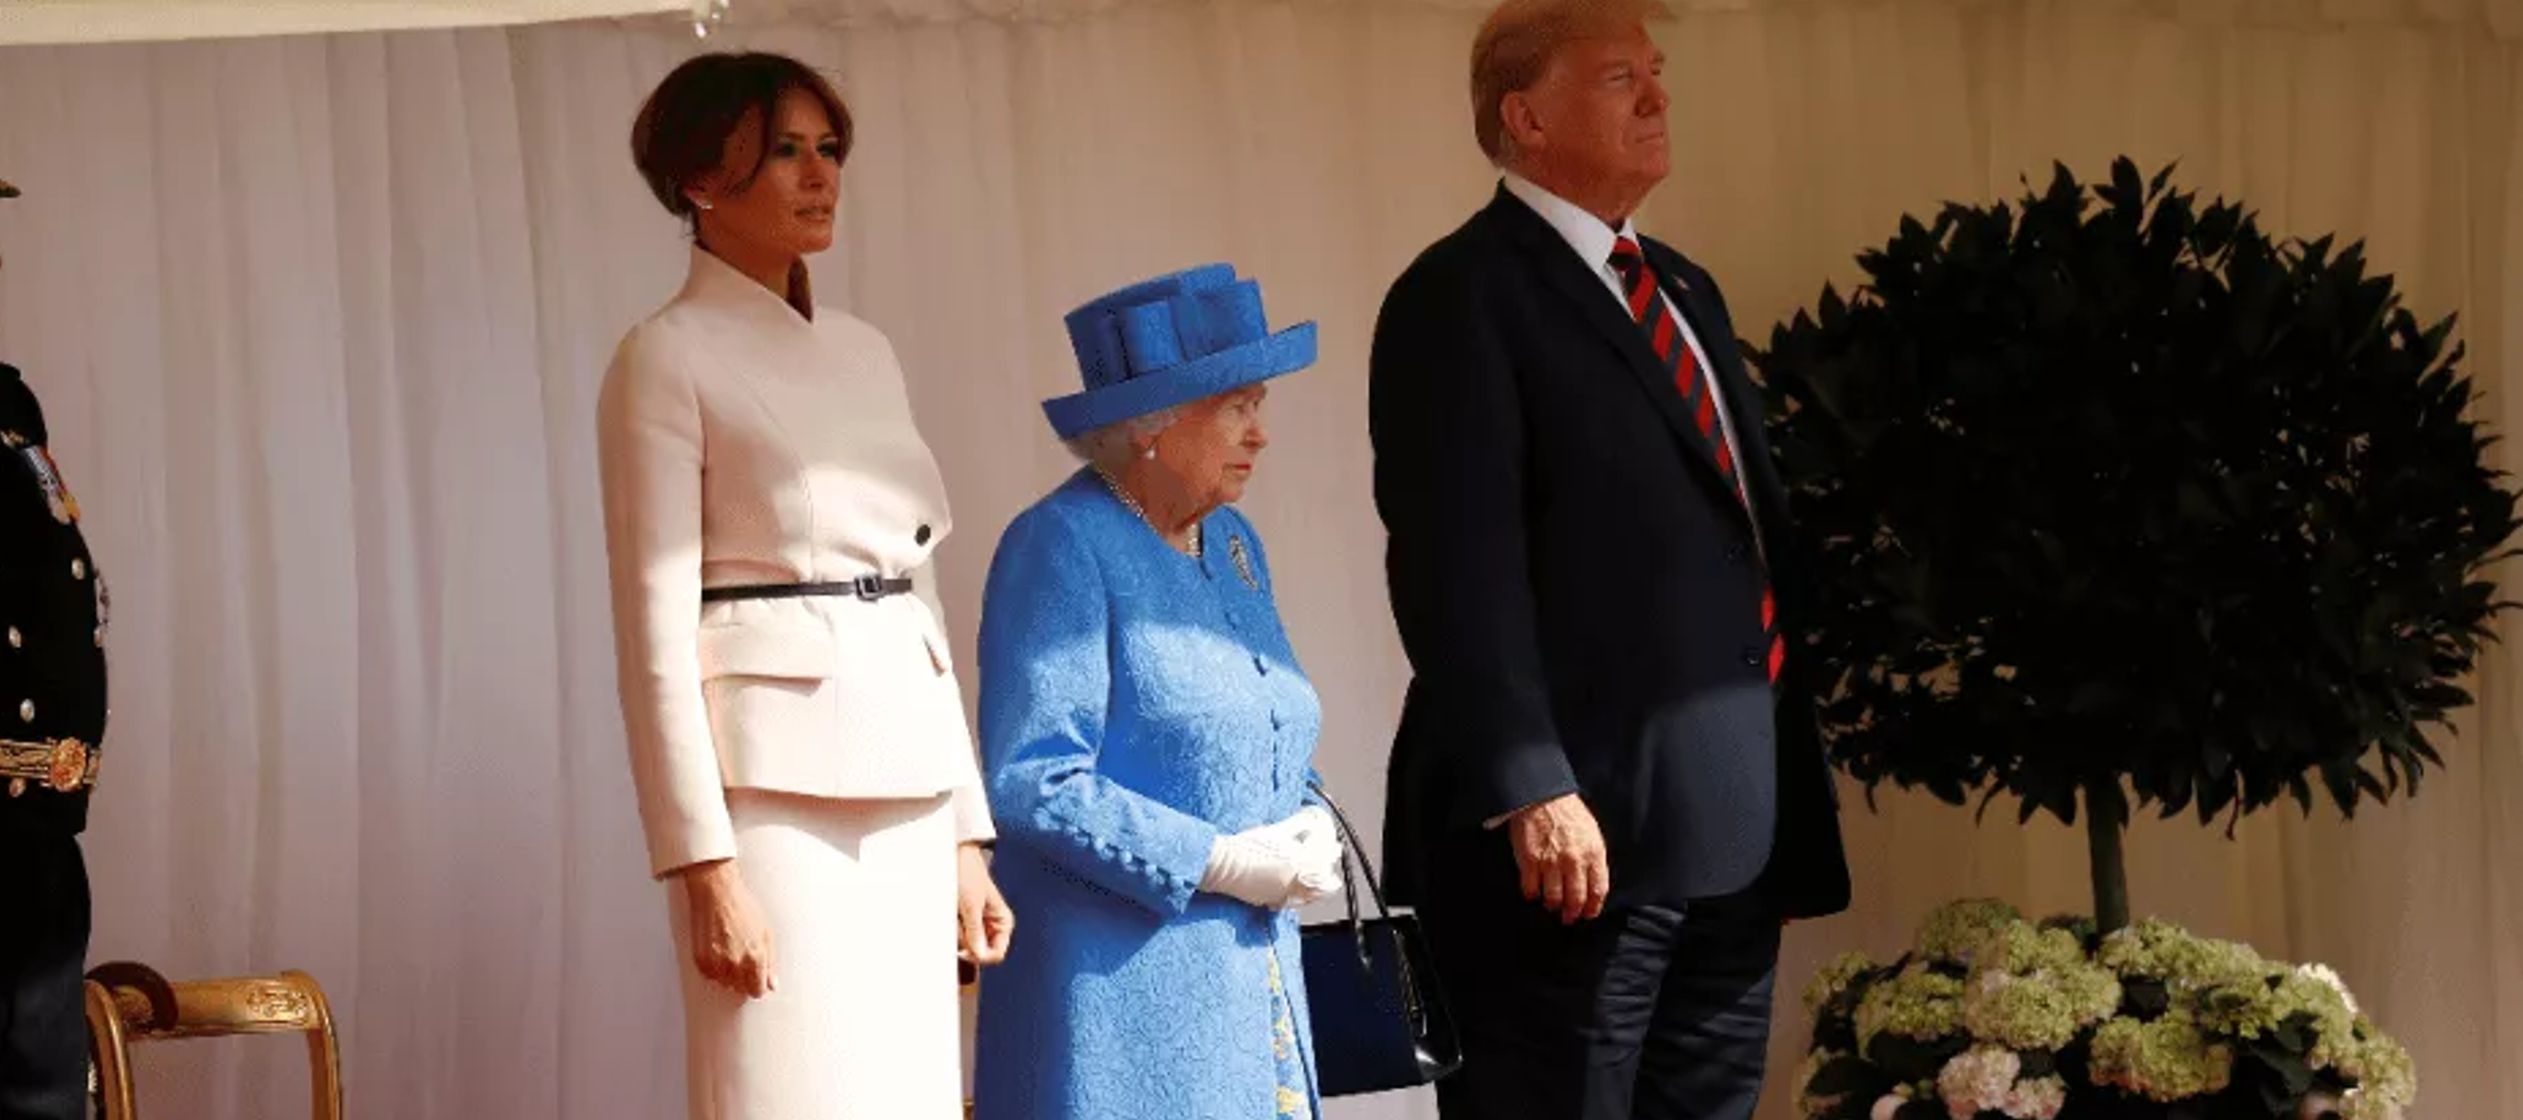 El matrimonio Trump ha optado por estrechar la mano a la monarca británica sin hacer ninguna...